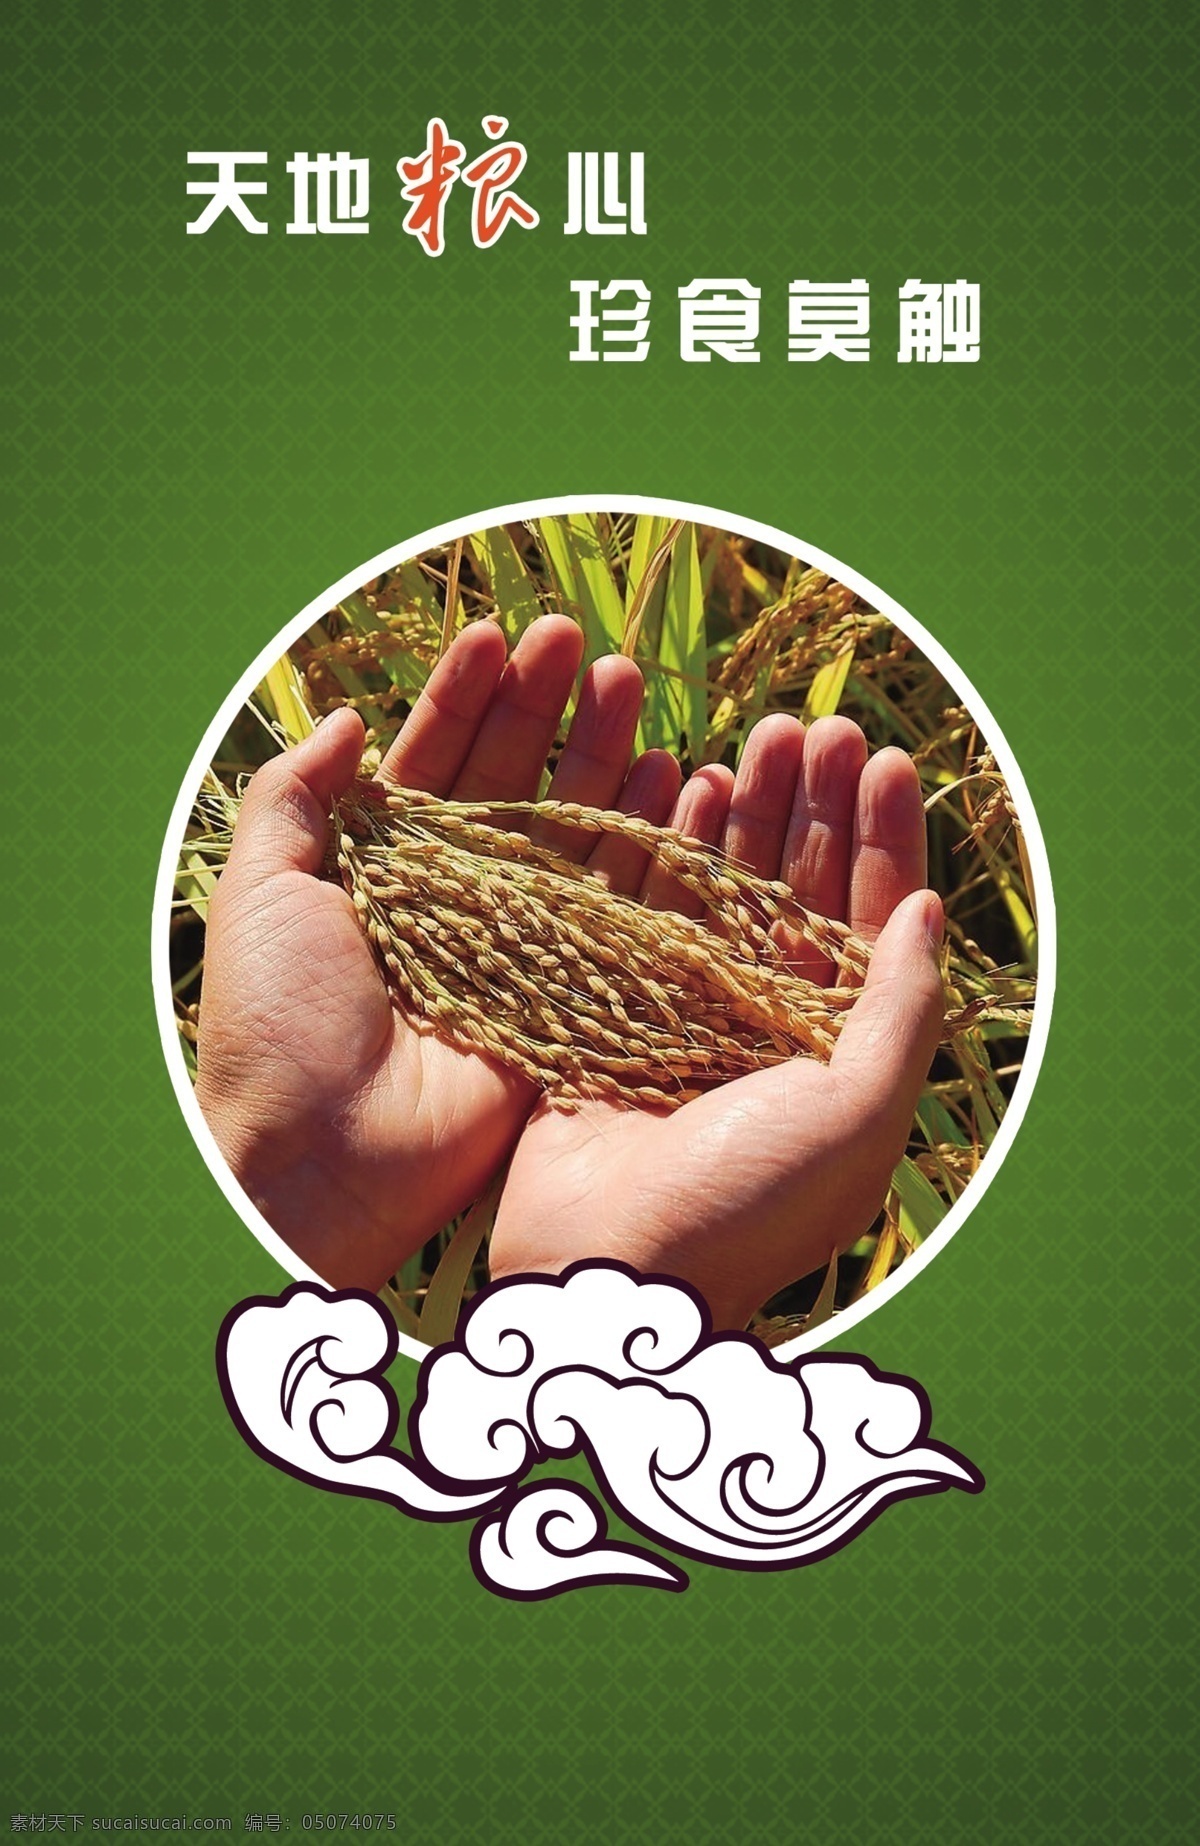 天地粮心 底纹 绿色背景 餐厅文化 饮食文化 稻谷 展板模板 广告设计模板 源文件